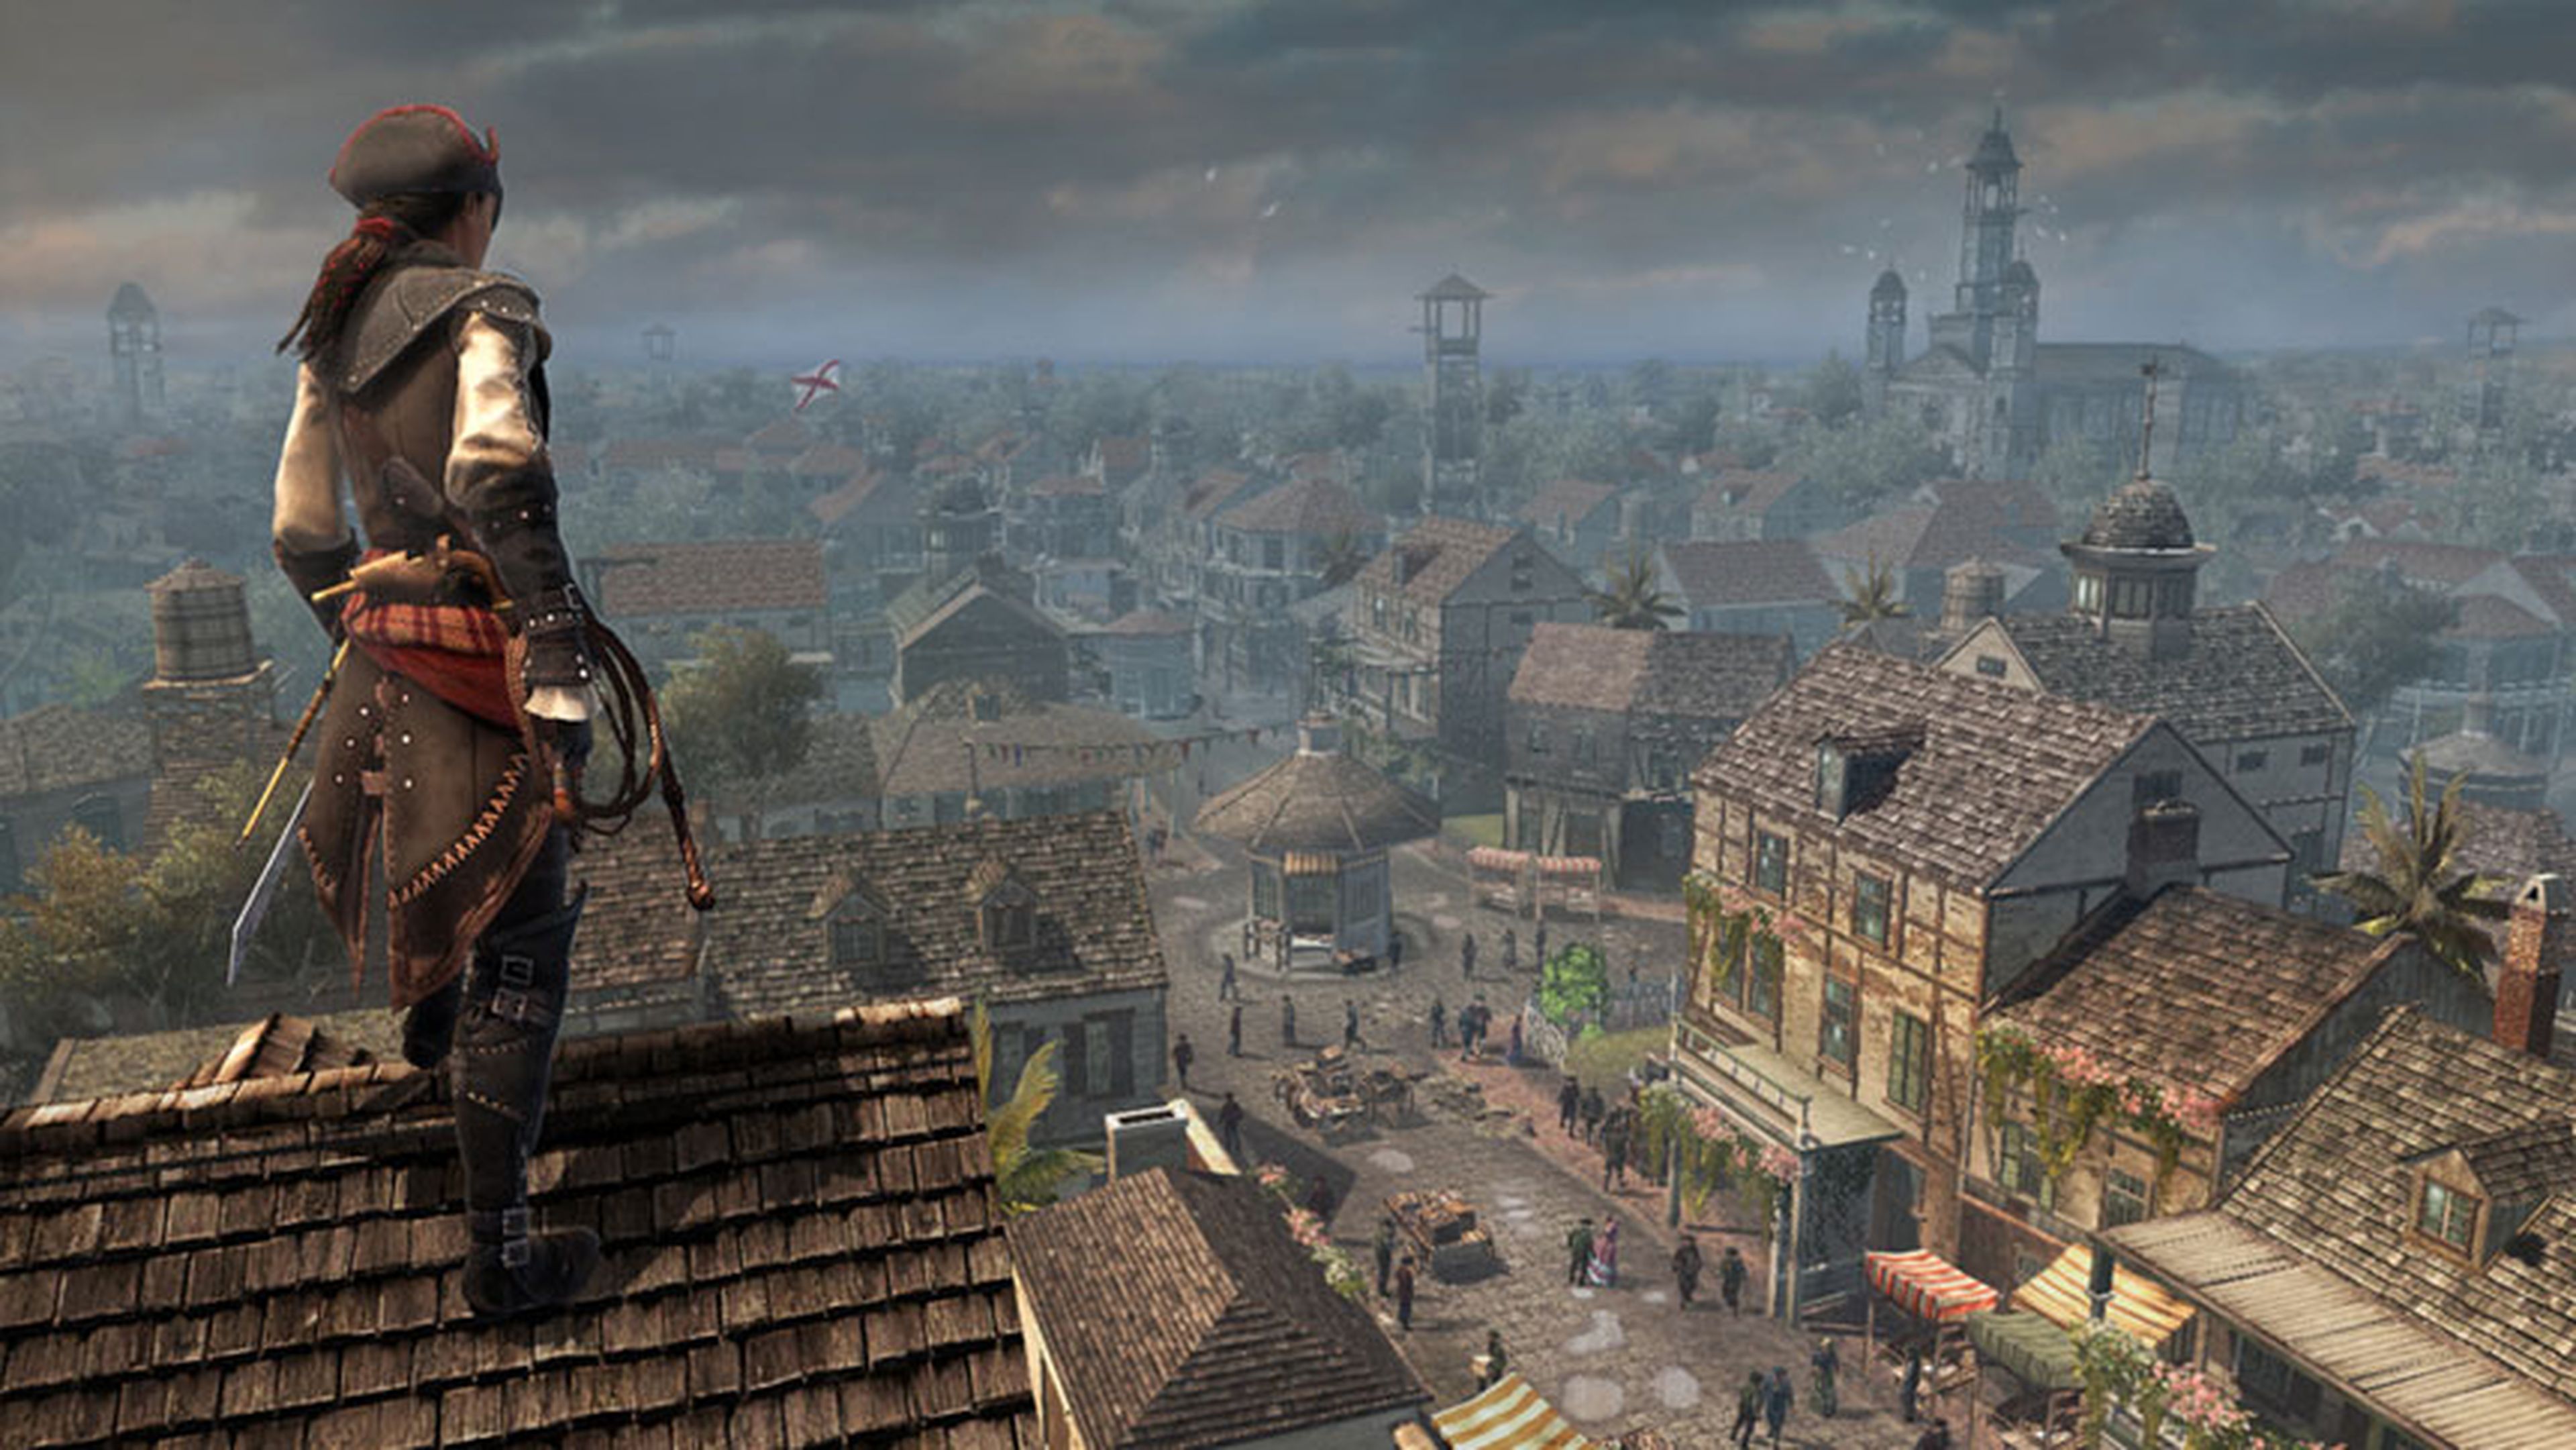 Assassins Creed Liberation HD disponible en enero en PS3